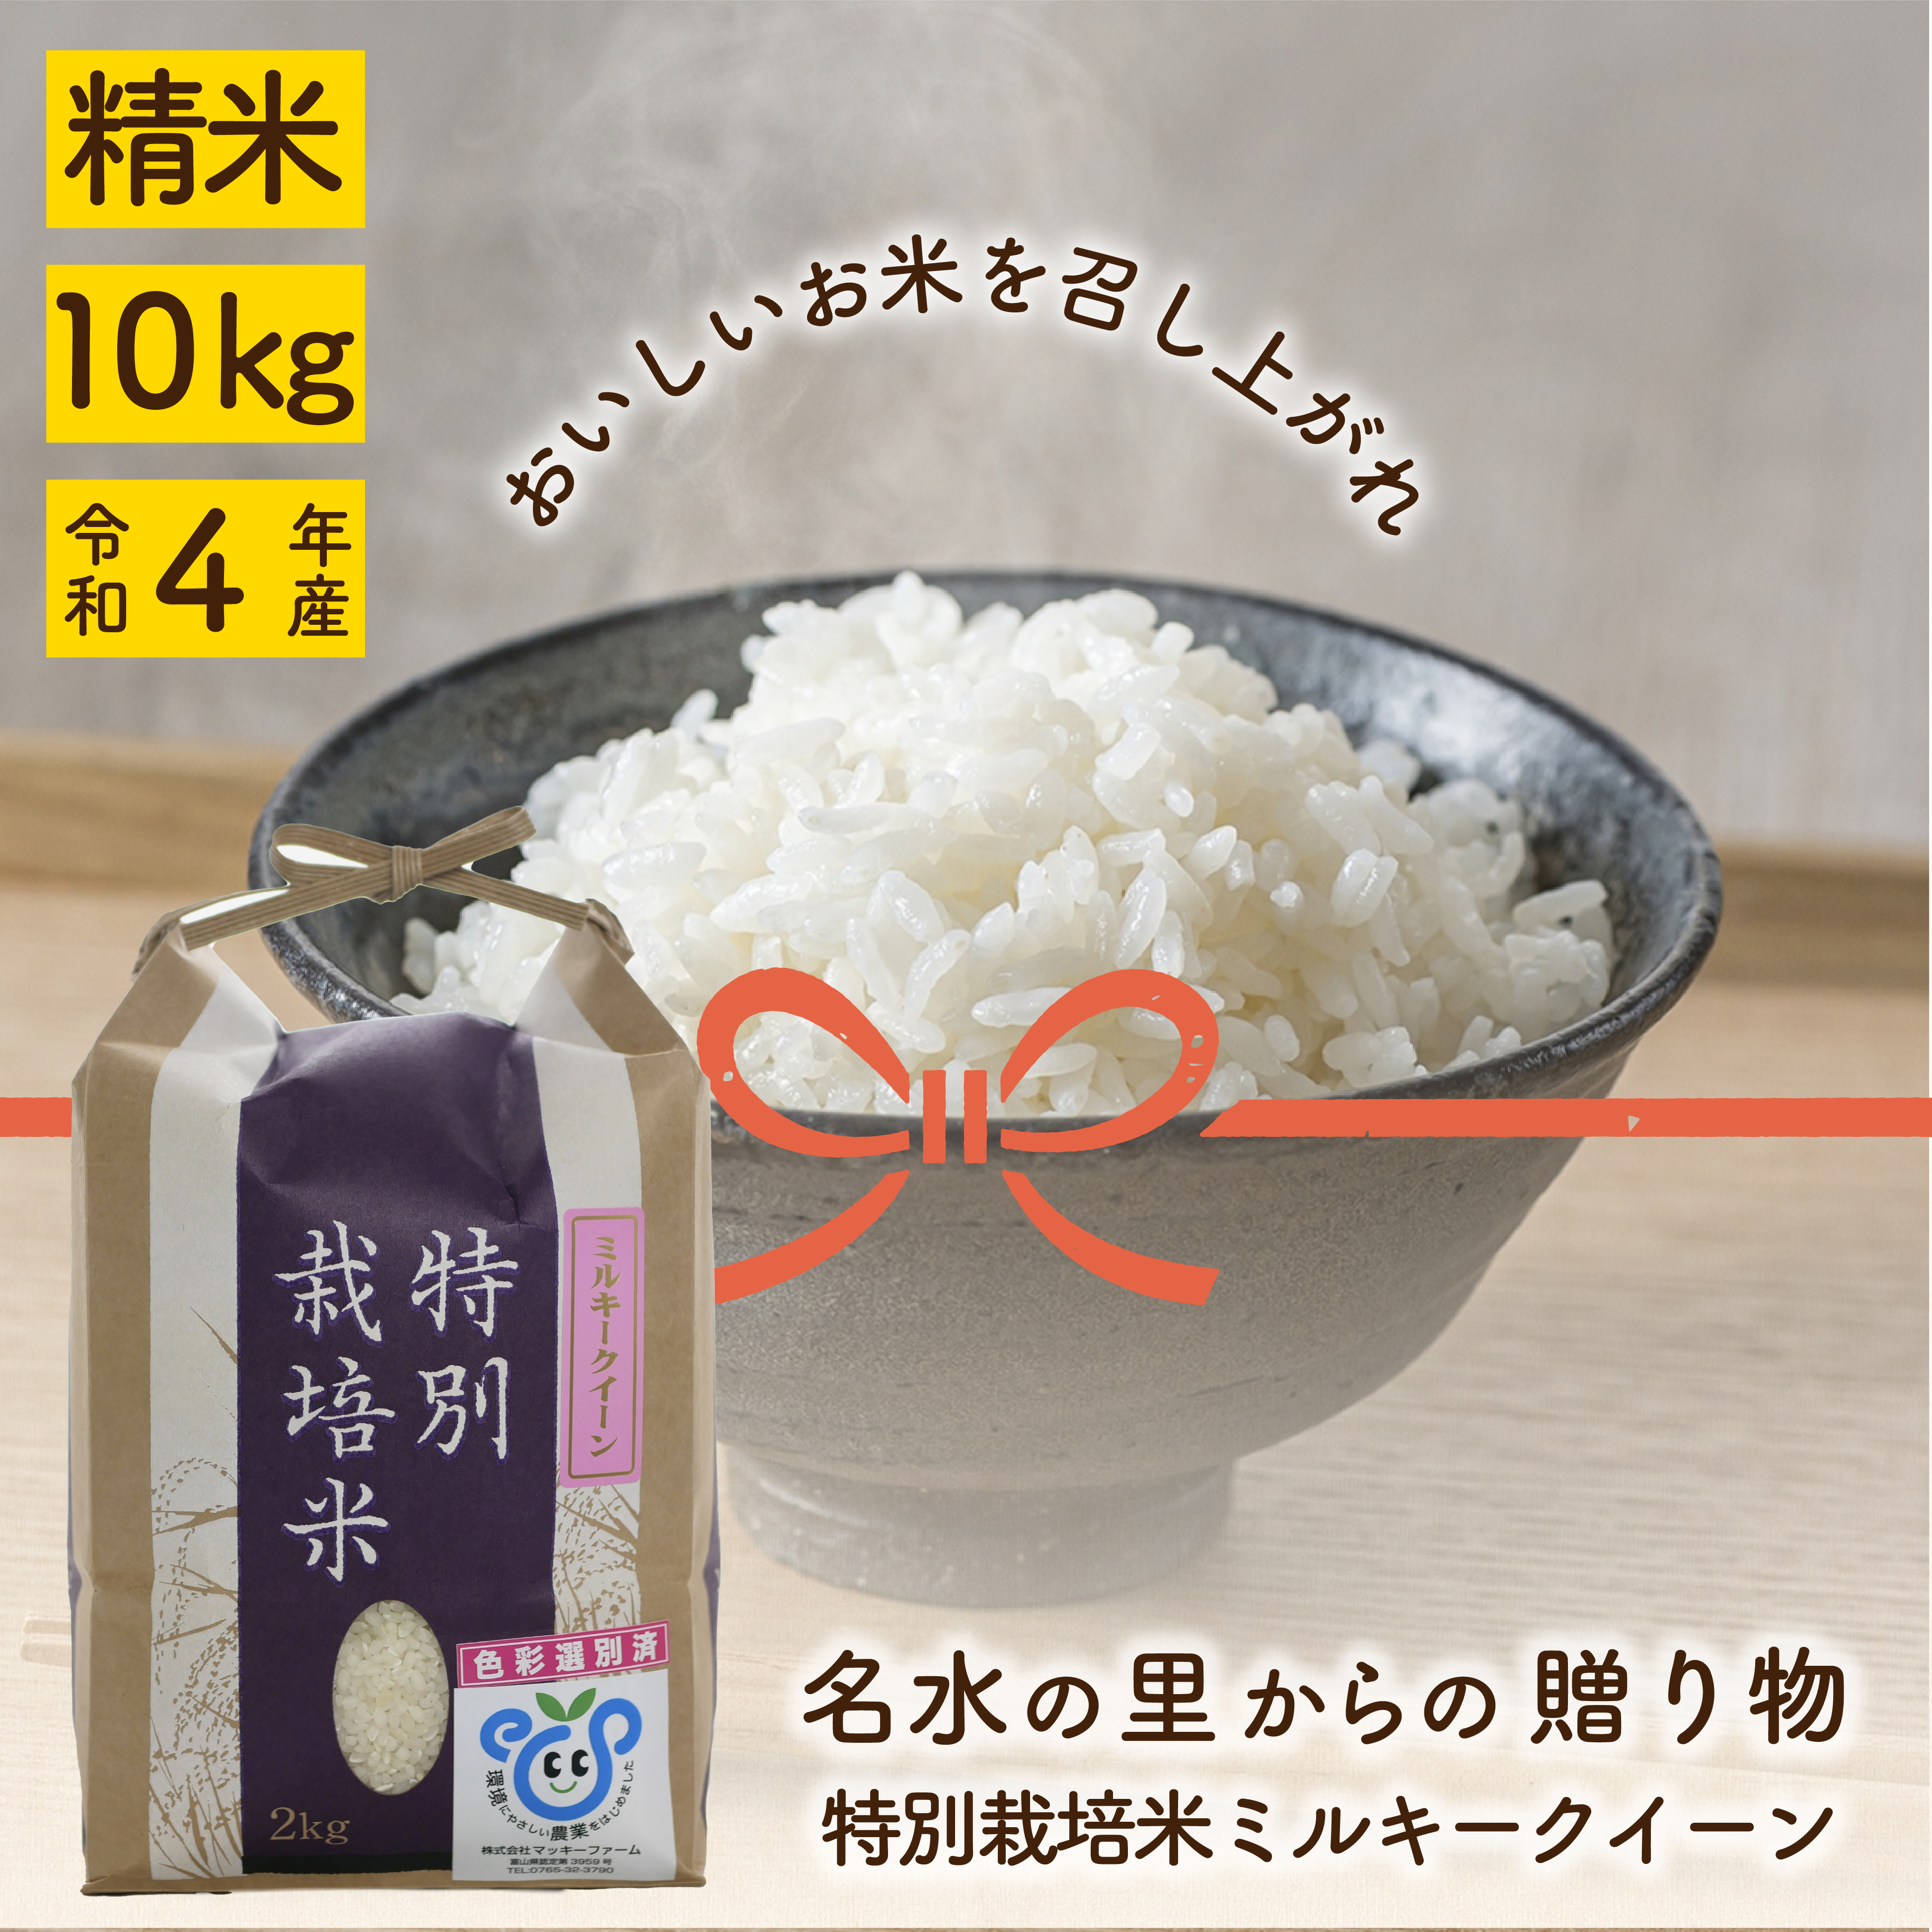 お米 10kg ☆ ミルキークイーン ☆ 玄米 - 米